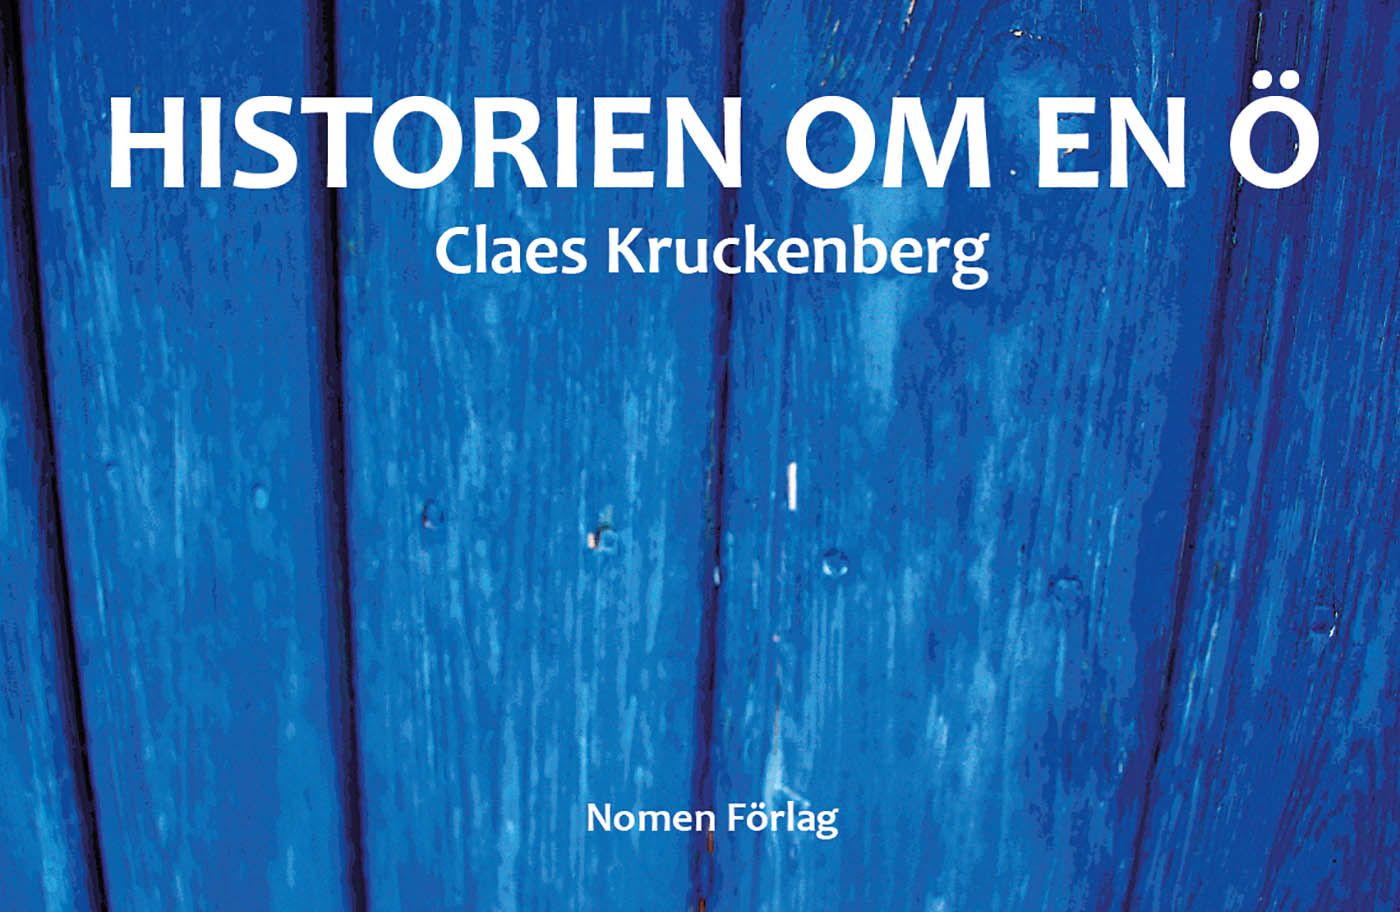 Historien om en ö, e-bok av Claes Kruckenberg